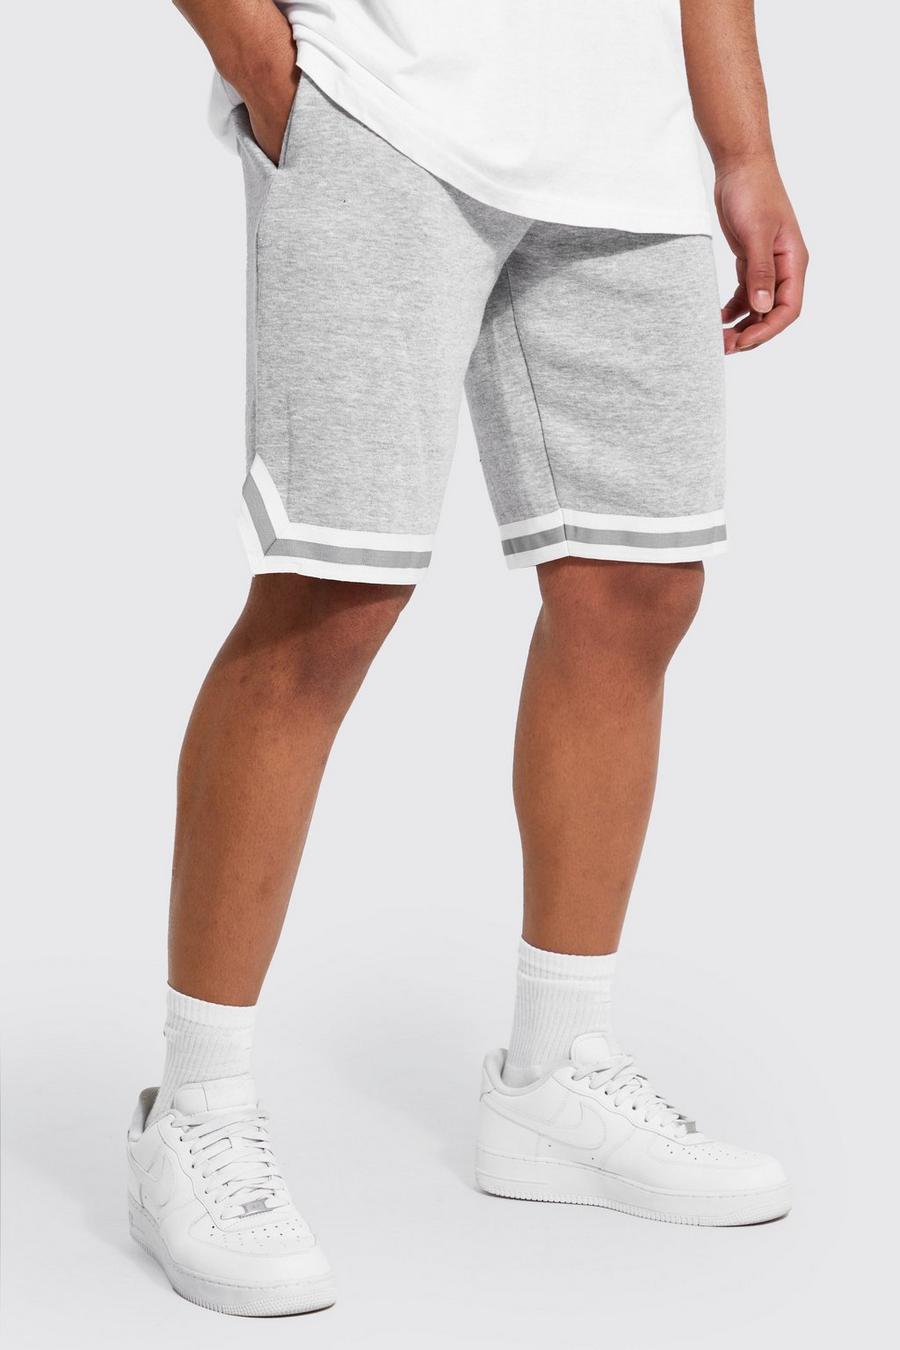 Pantaloncini da basket Tall in jersey con strisce sul fondo, Grey marl grigio